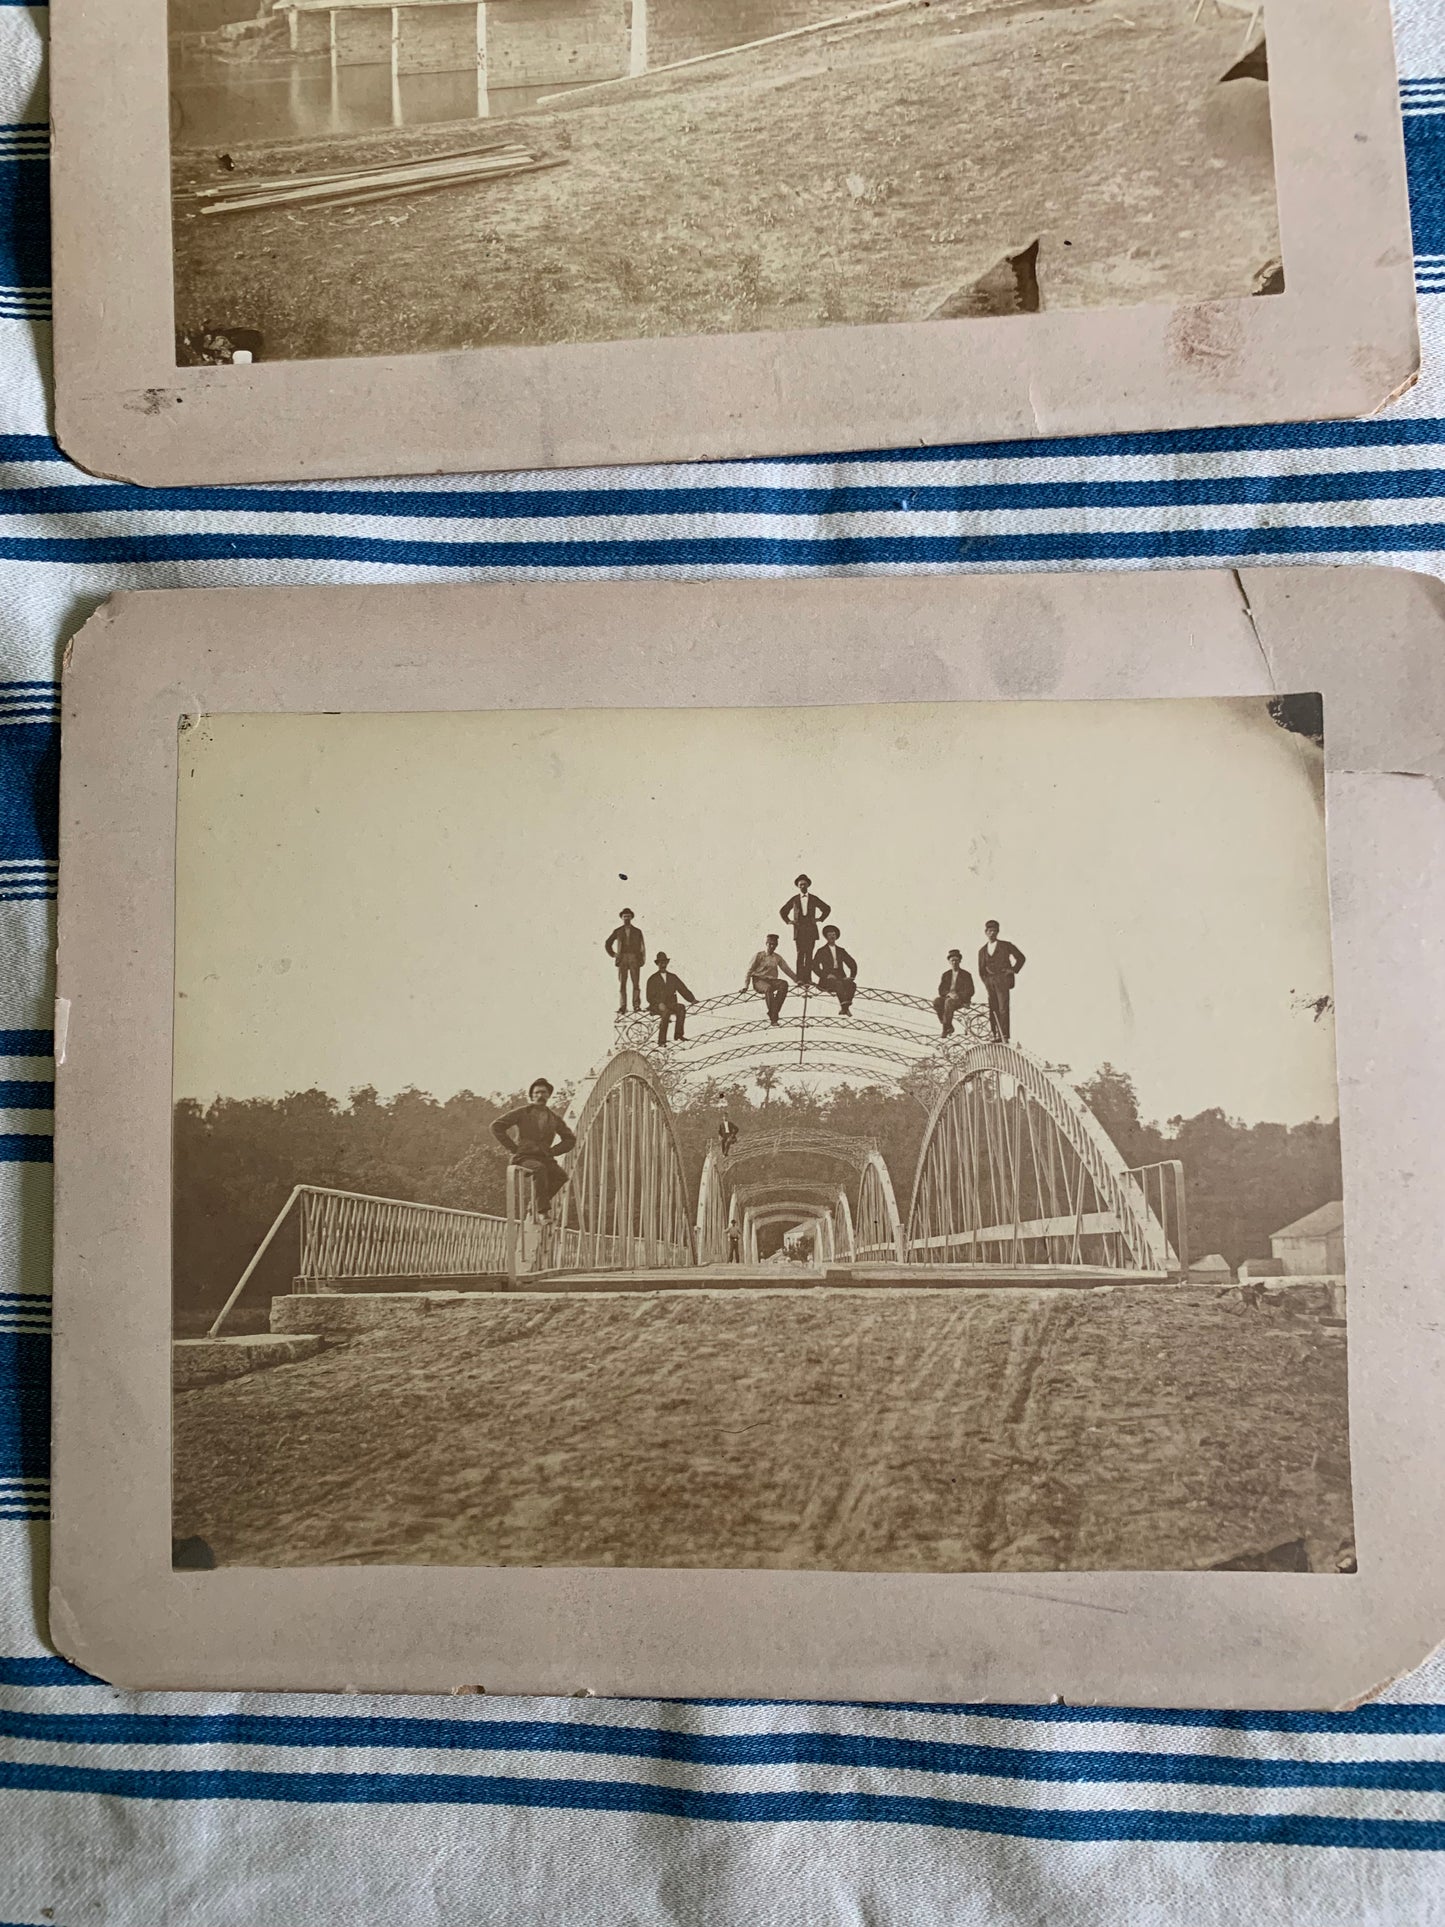 Vintage photos of men on bridge